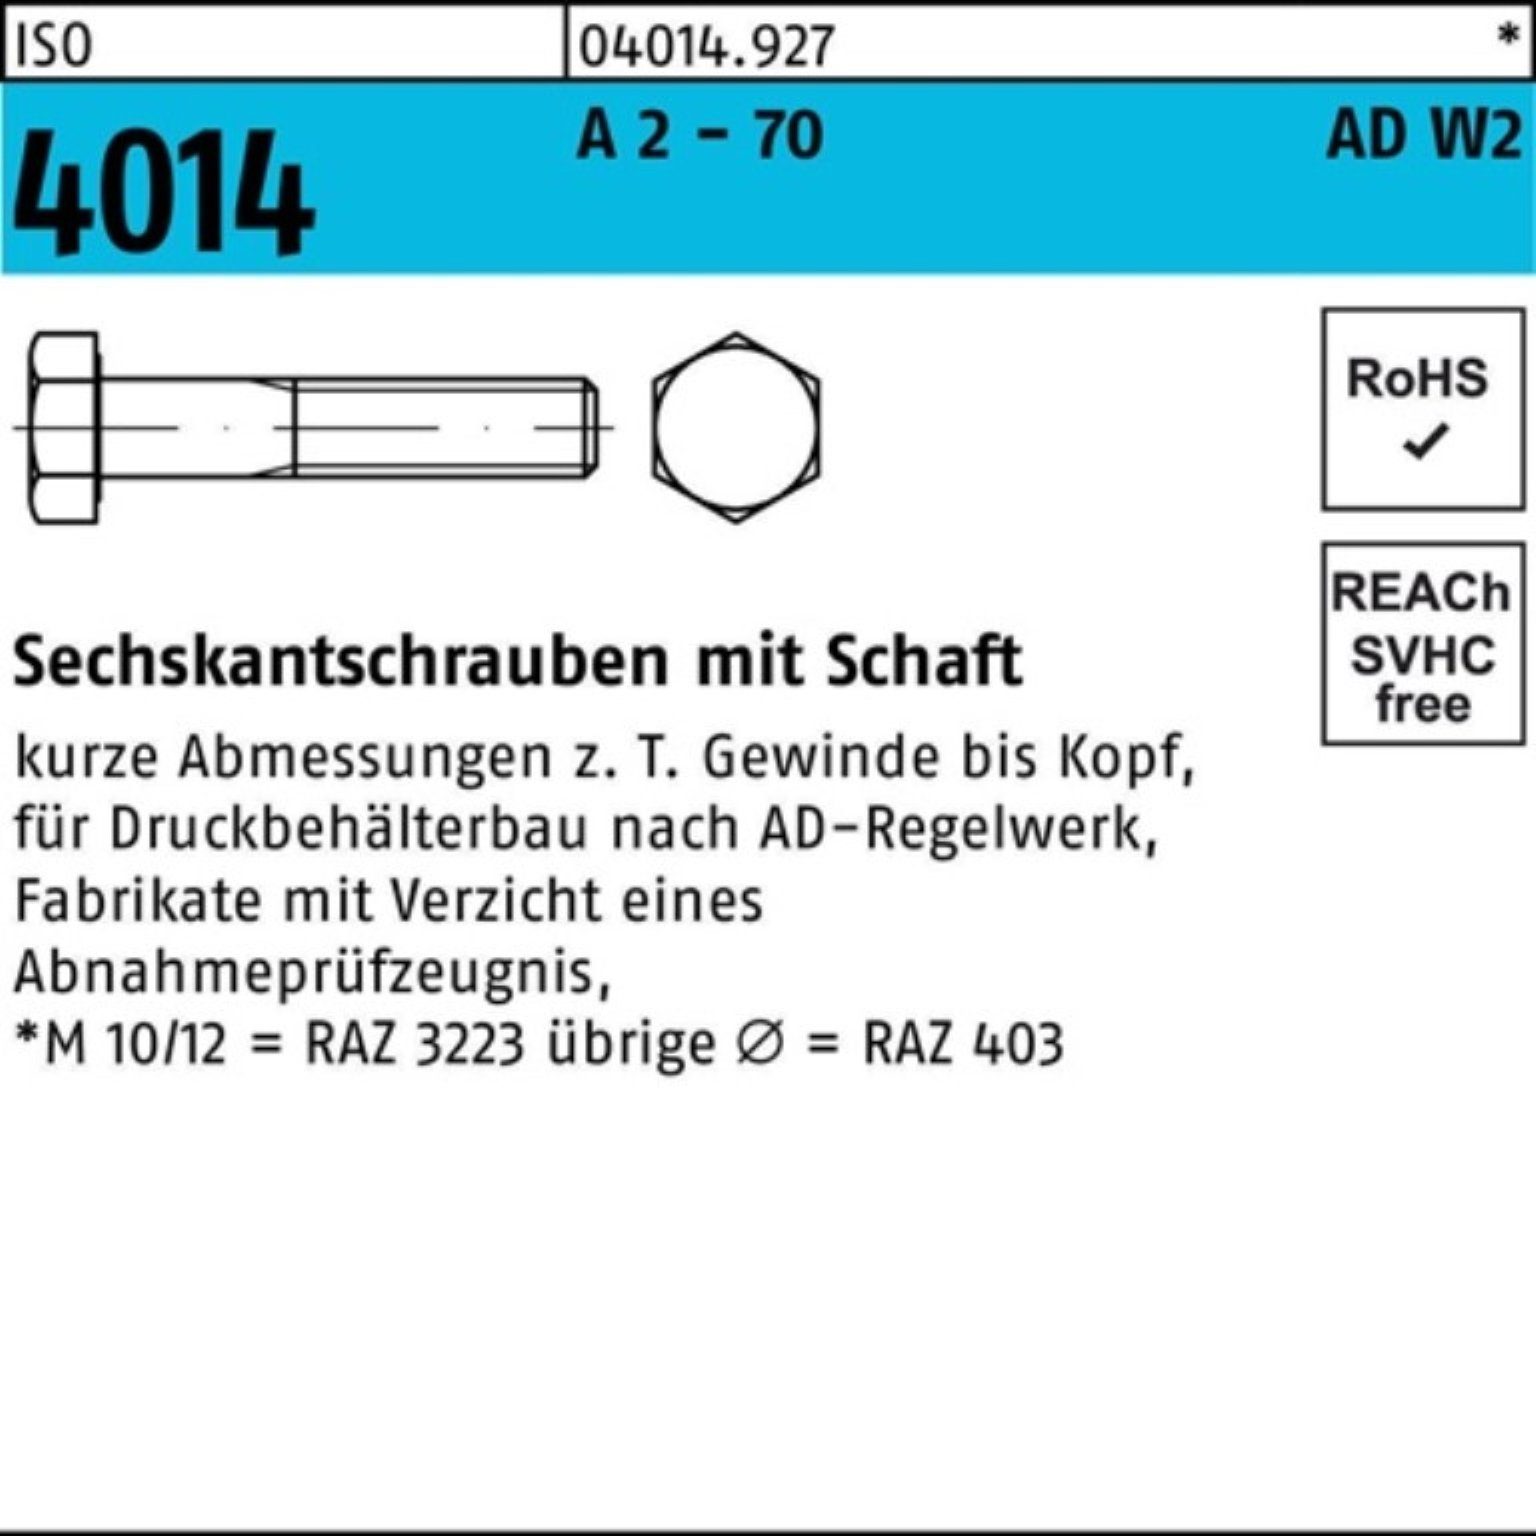 Bufab Sechskantschraube 100er Pack Sechskantschraube ISO 4014 Schaft M10x 150 A 2 - 70 AD-W2 5